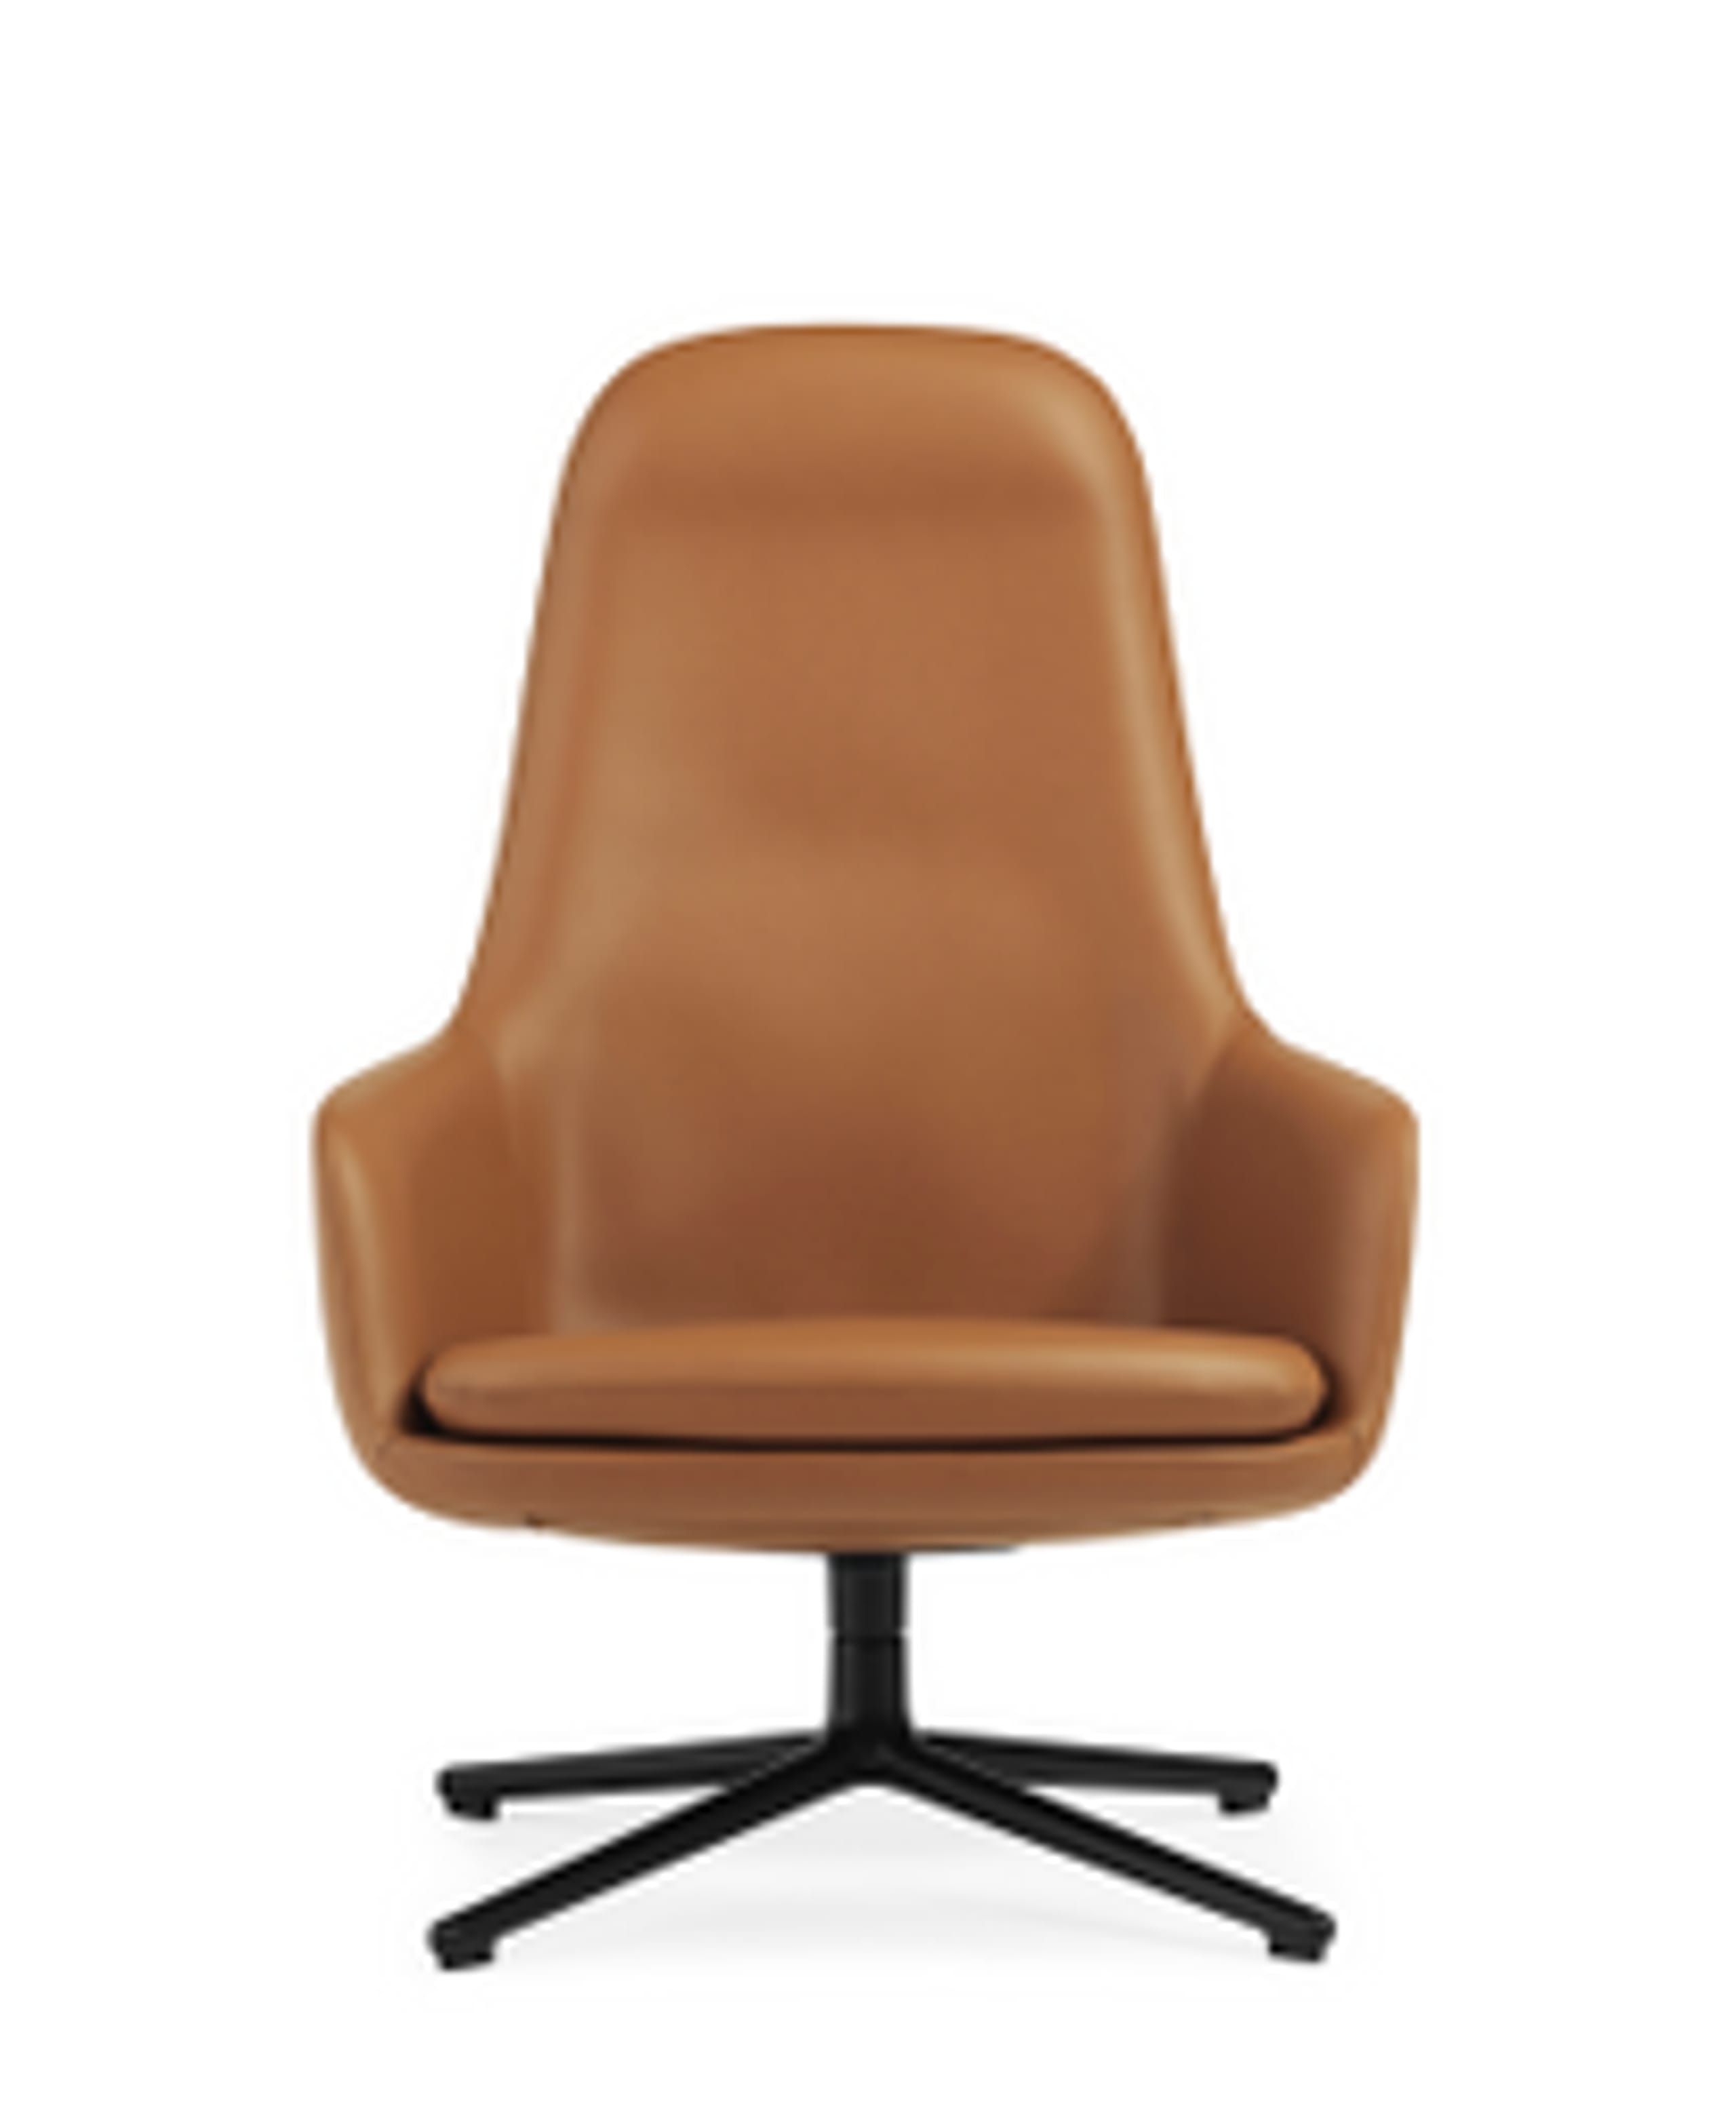 Normann Copenhagen - Fauteuil - Era Lounge Chair High Swivel - Aluminium sort Stel / Ultra læder